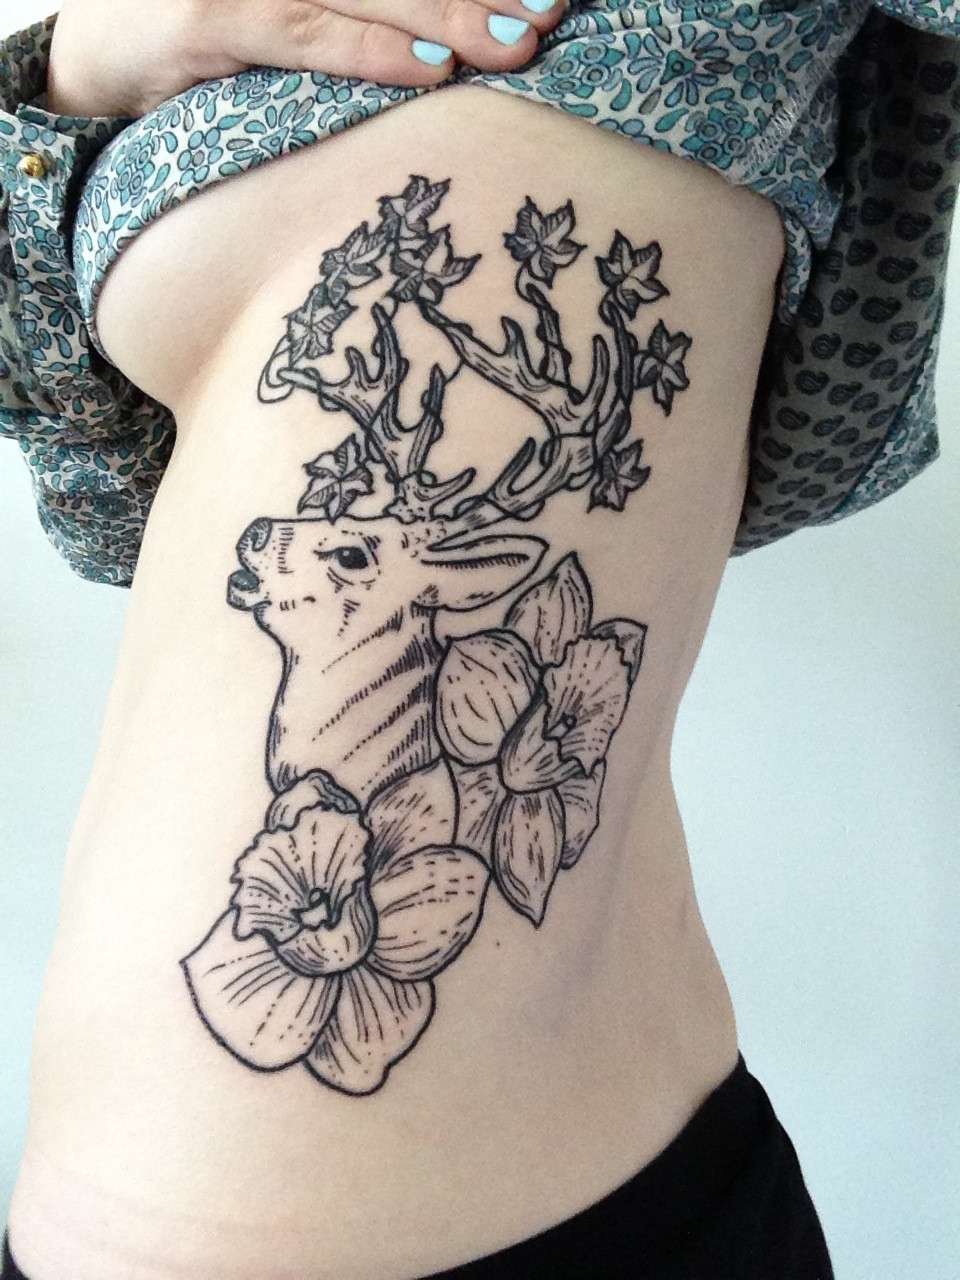 Tattoo By Bradley Teitelbaum White Rabbit Studio New York Ny